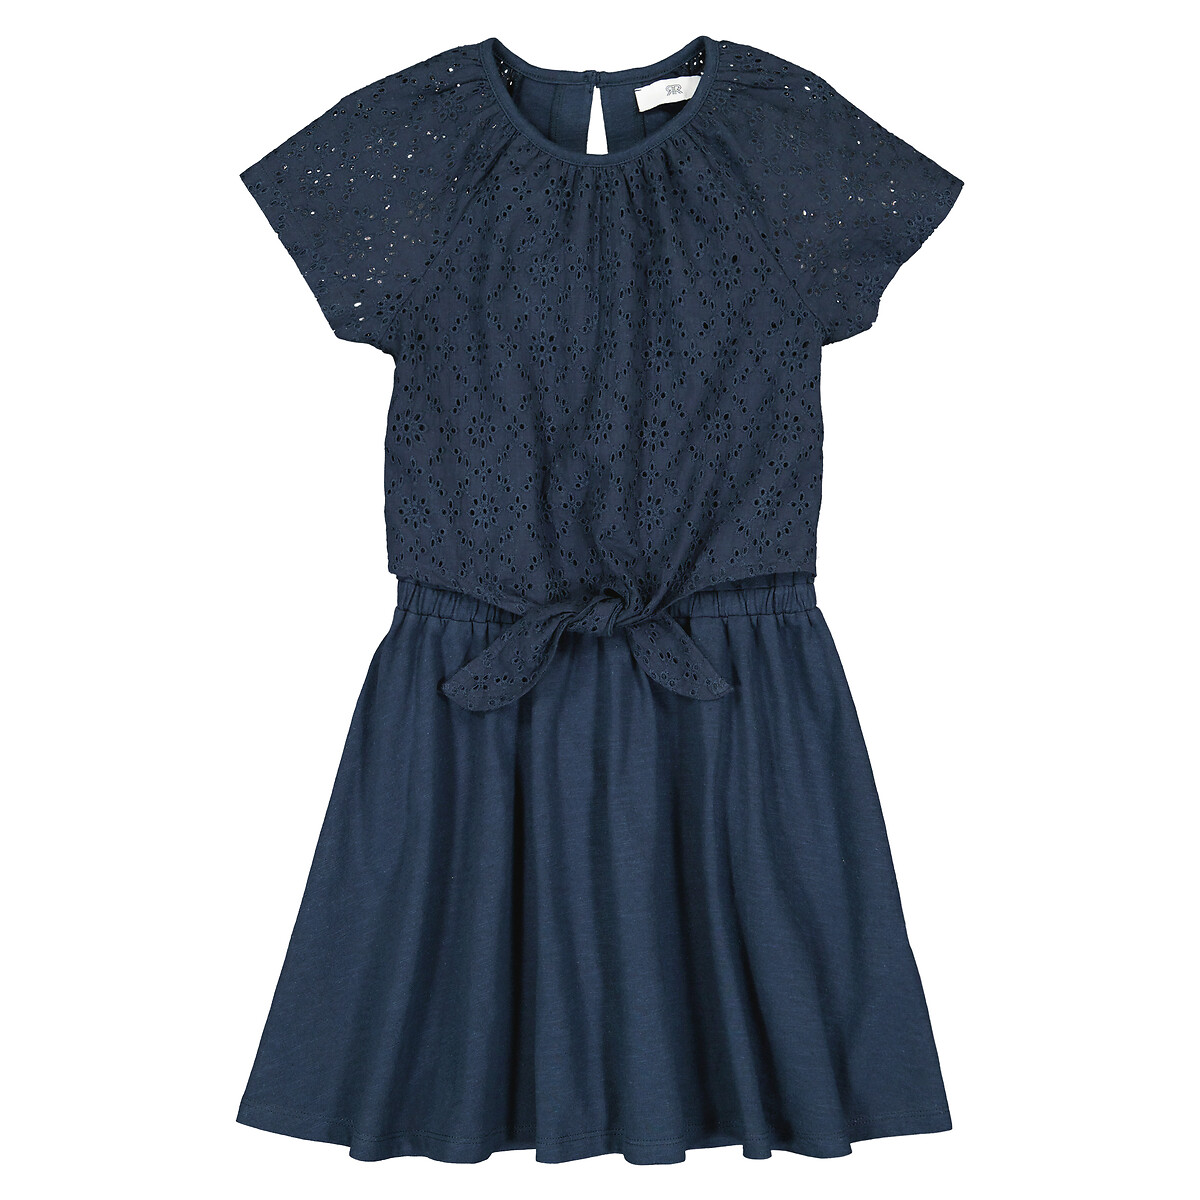 Платье С короткими рукавами английская вышивка спереди 9 лет - 132 см синий LaRedoute, размер 9 лет - 132 см - фото 3